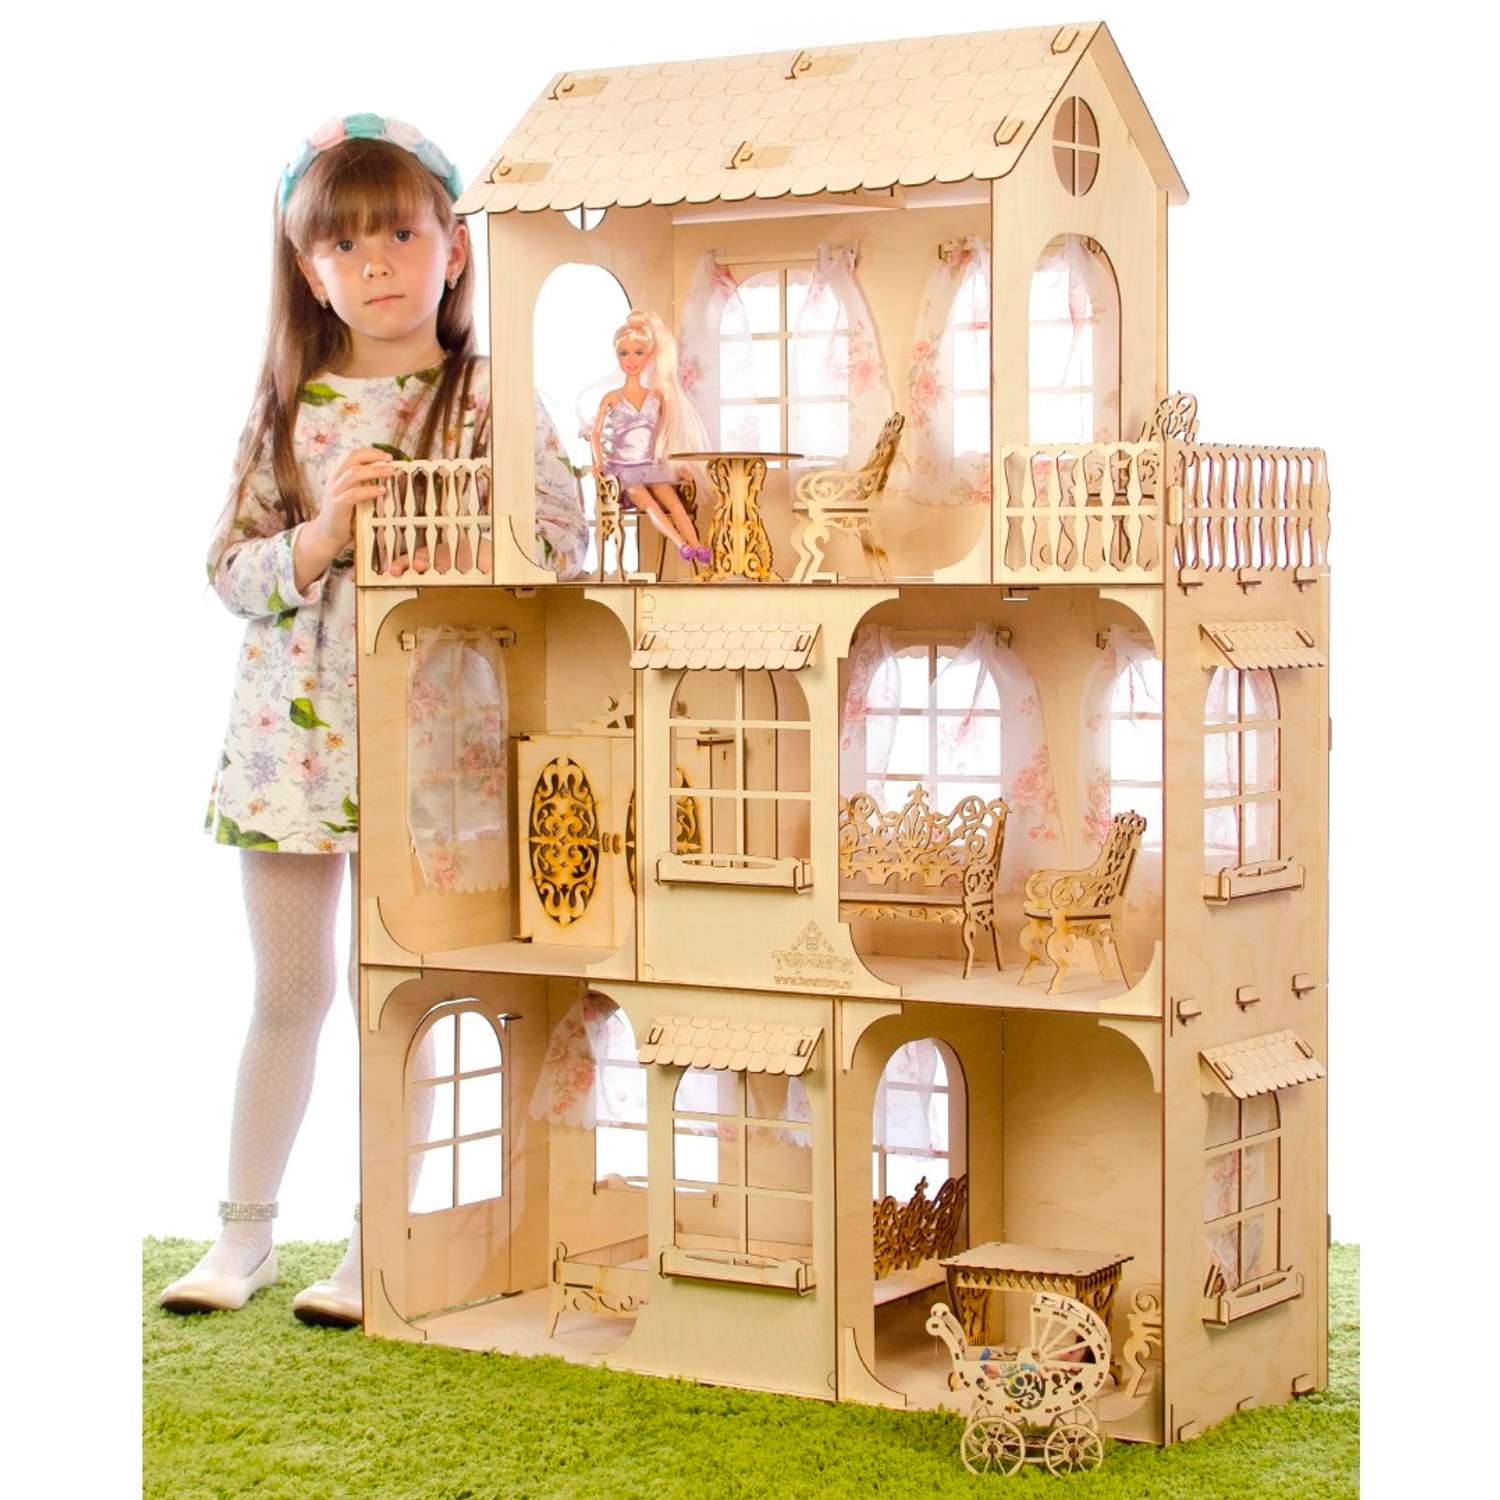 Кукольный домик Теремок кд-1. Barbie кукольный домик "летняя вилла" 76932. Дом кукол 4